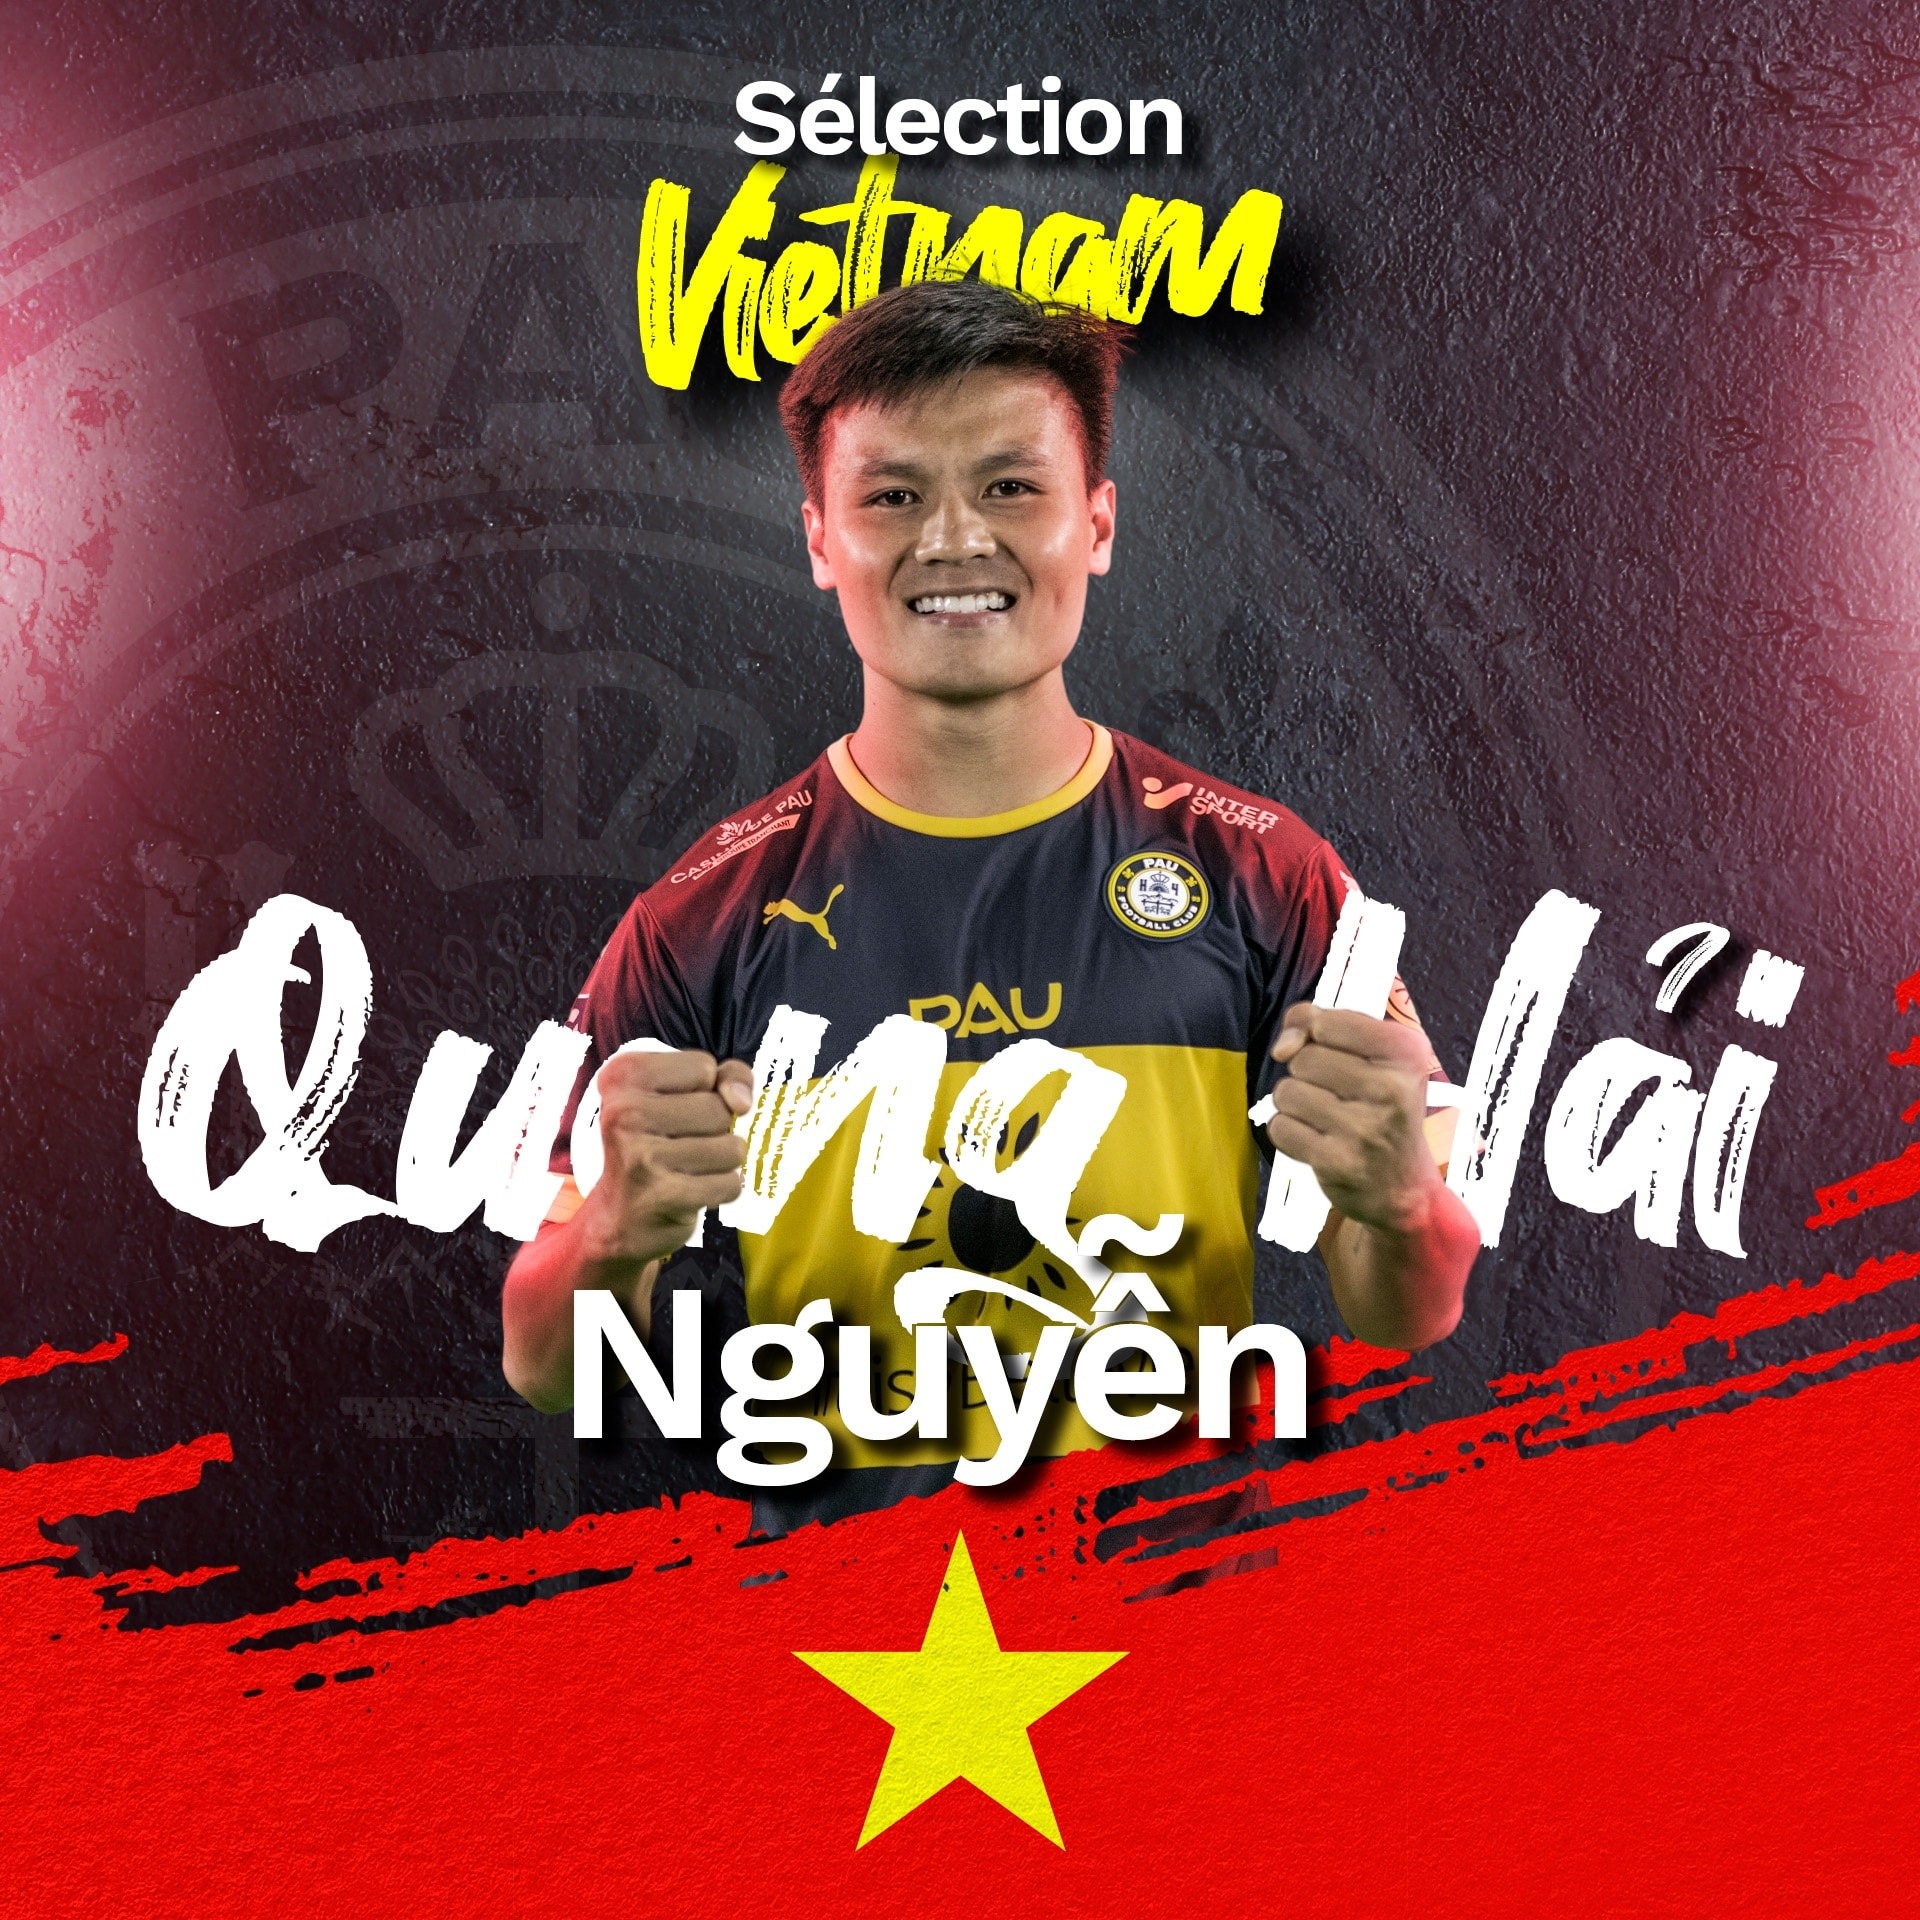 Những giây phút vô cùng mãn nhãn của cầu thủ trẻ tài năng người Việt Nam - Nguyễn Quang Hải. Để xem thêm những khoảnh khắc đẹp nhất của anh, hãy bấm vào hình ảnh liên quan.